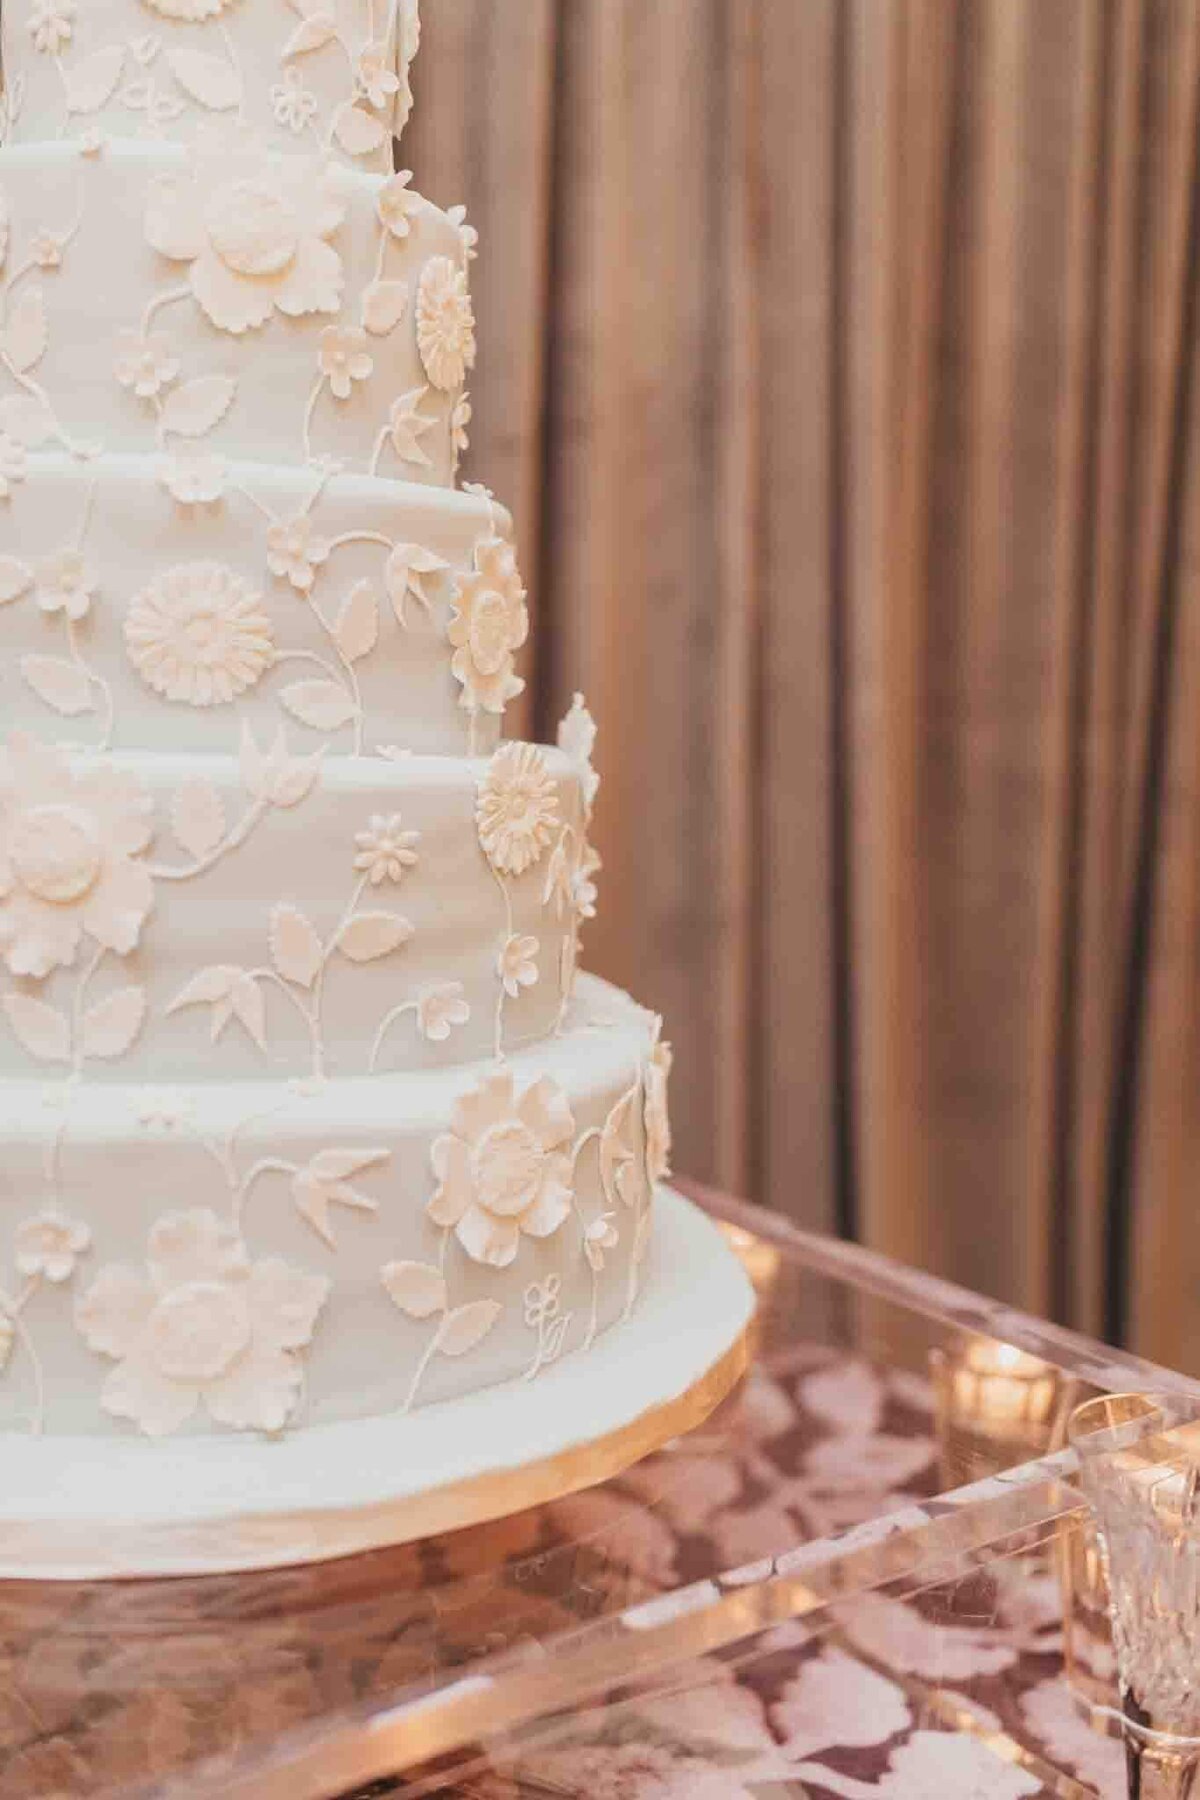 floral fondant on wedding cake sitting on acrylic cake stand.